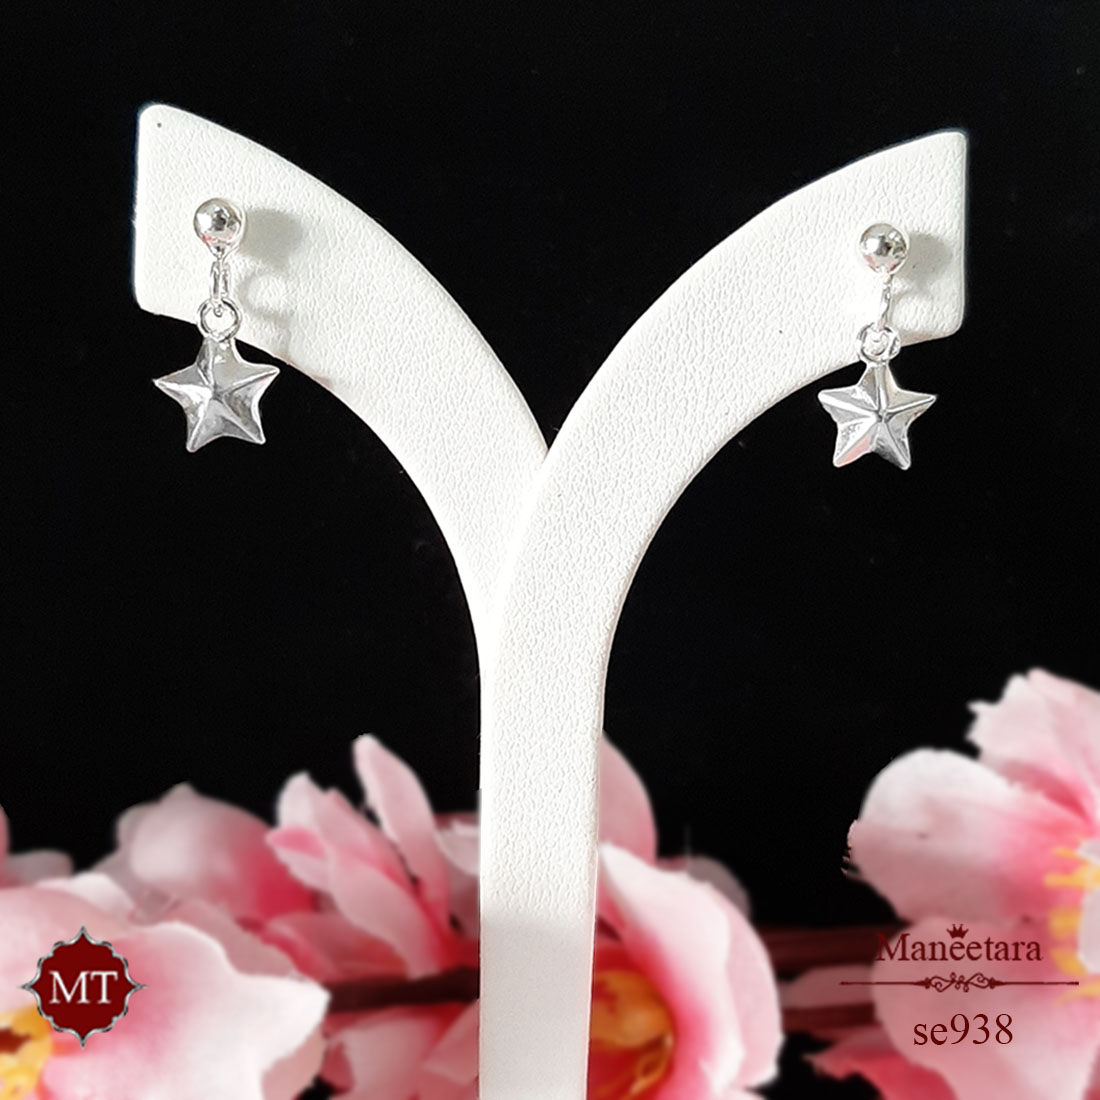 ต่างหูเงินแท้ แบบติดหูประดับตุ้งติ้งดาว 925 Sterling Silver Star Earrings : มณีธารา MT Jewelry (se938)